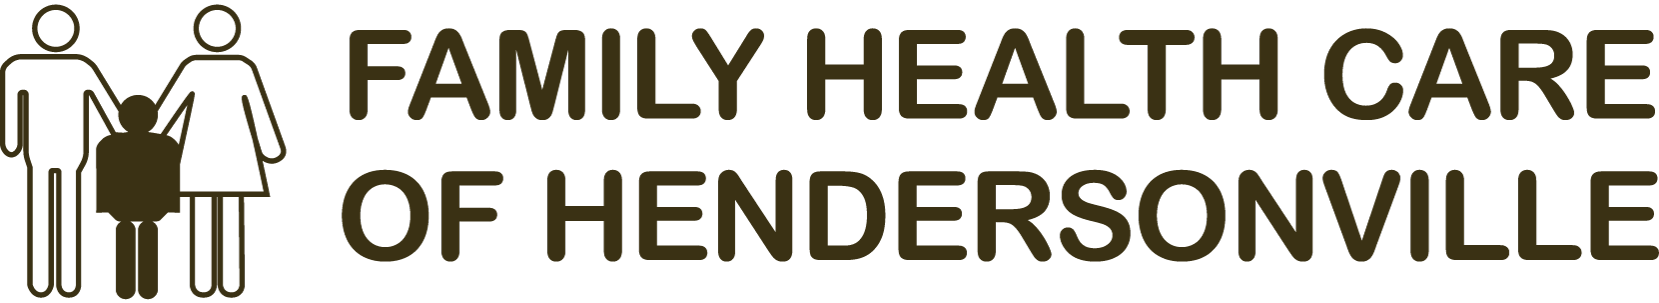 Family Health Care of Hendersonville